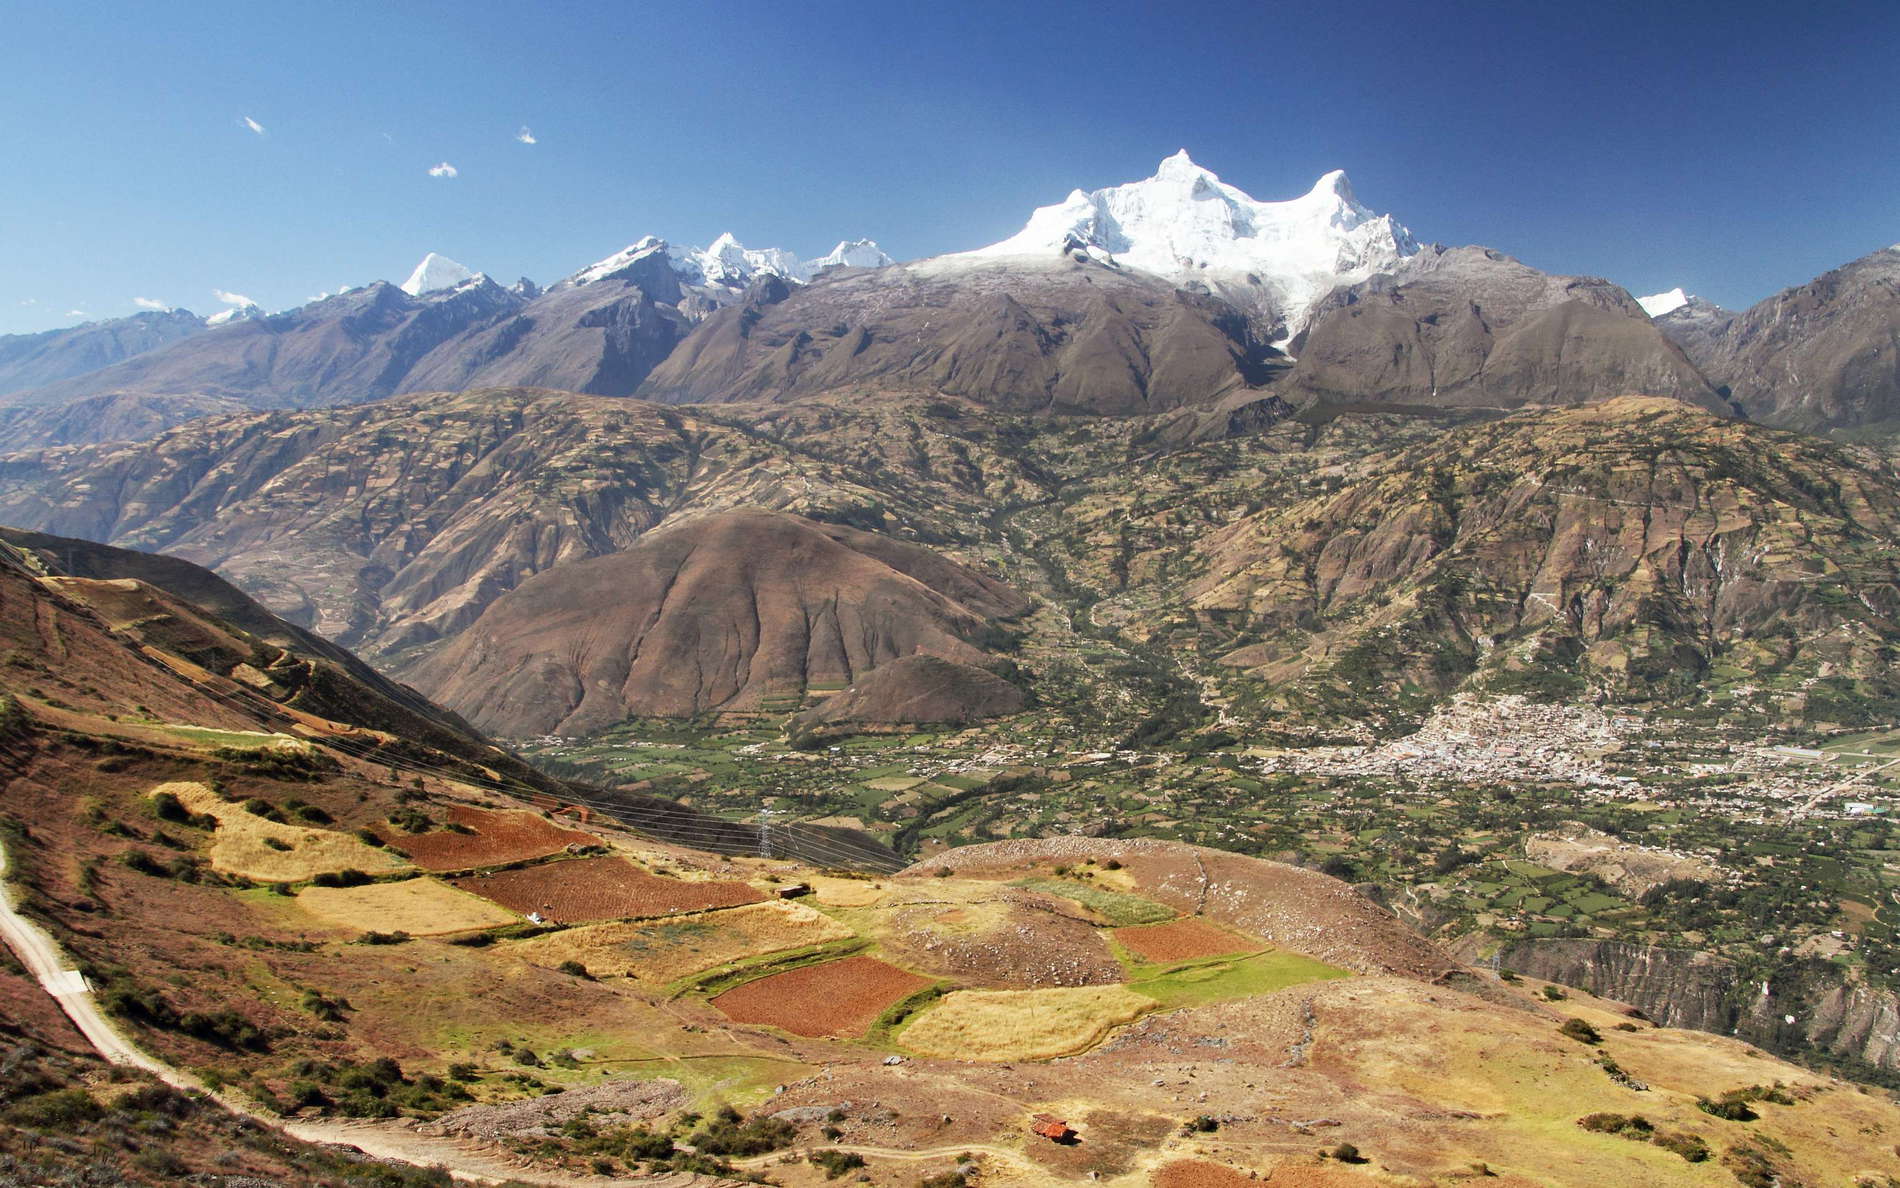 Cordillera Negra and Cordillera Blanca